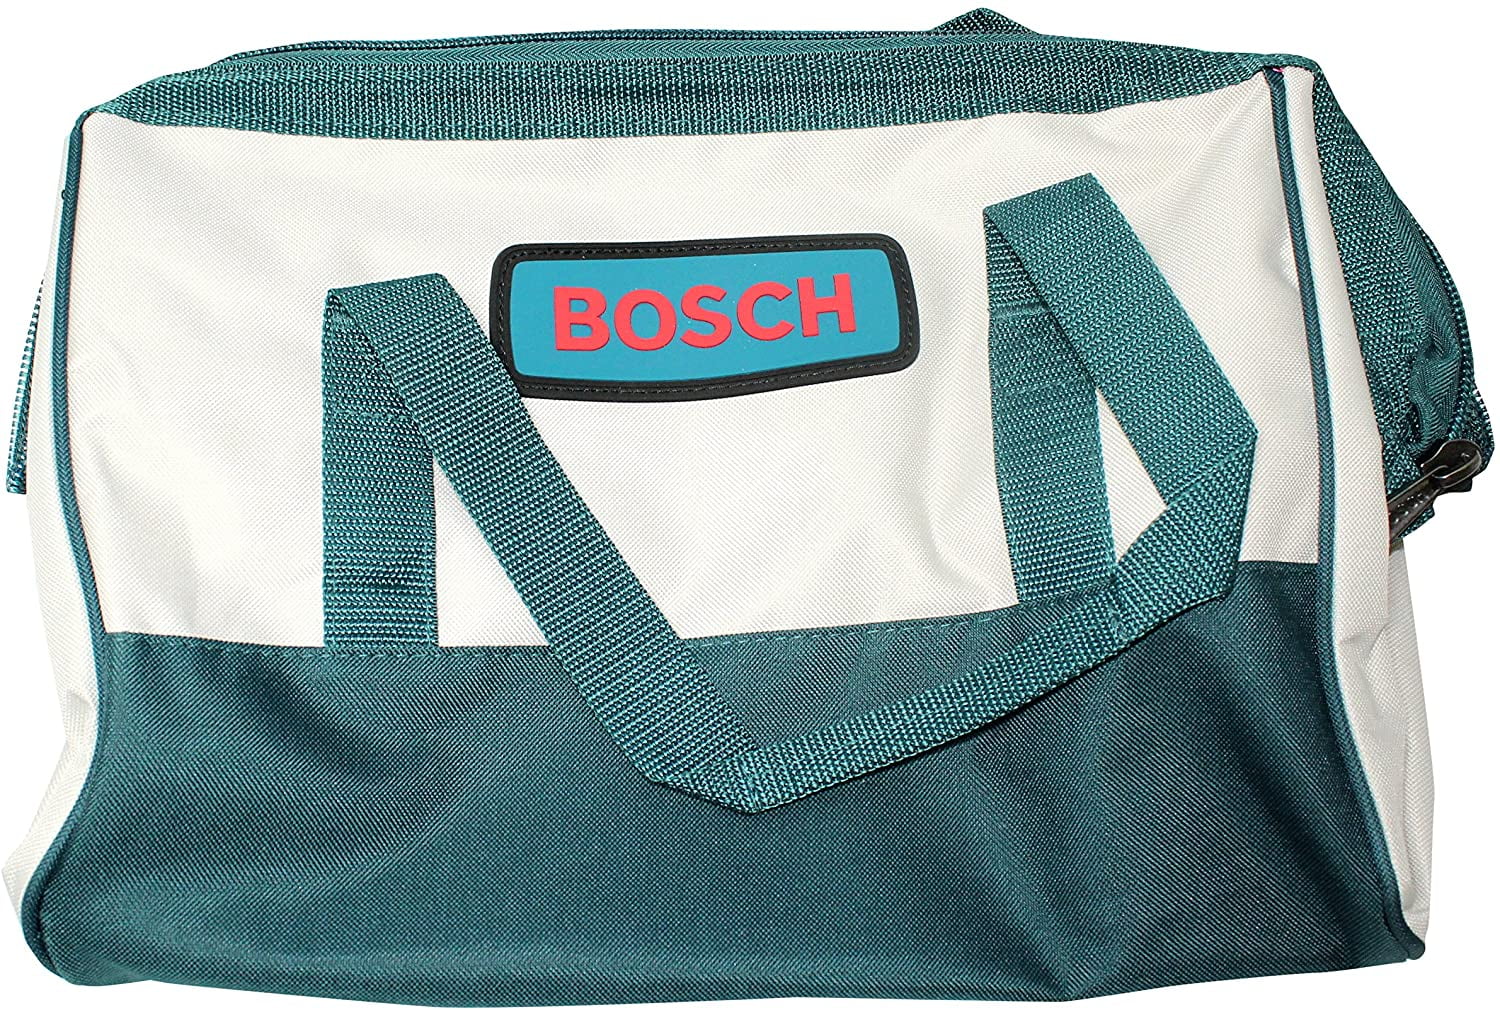 Bosch 14.5" x 9.5" x 11" Heavy Duty Contractors Tool Bag # 2610923879 -  Walmart.com